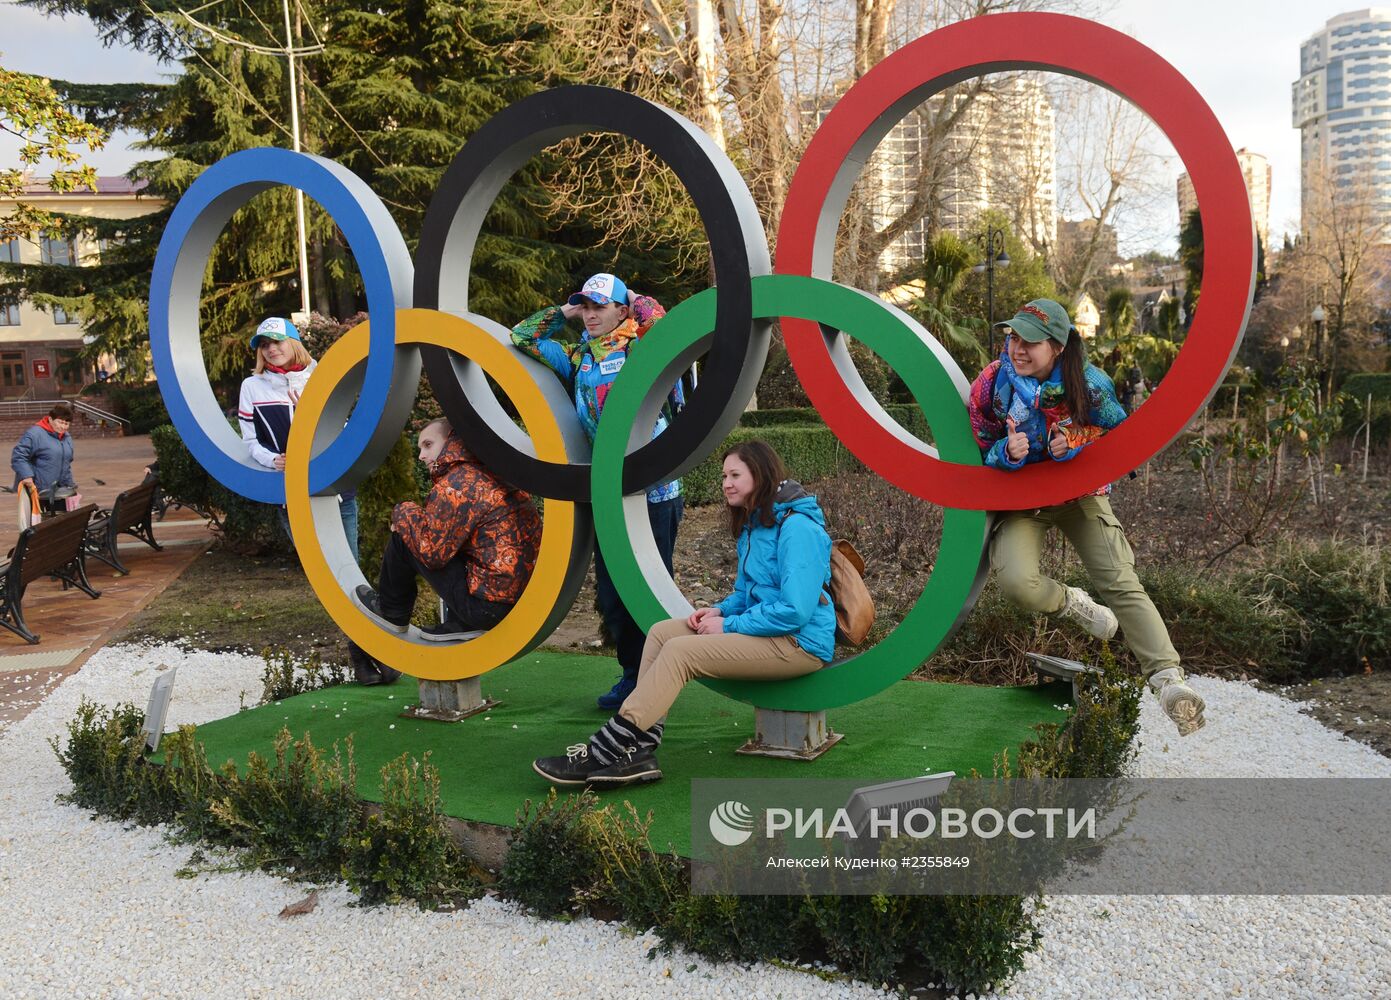 Олимпийские игры в Сочи. 5 дней до старта